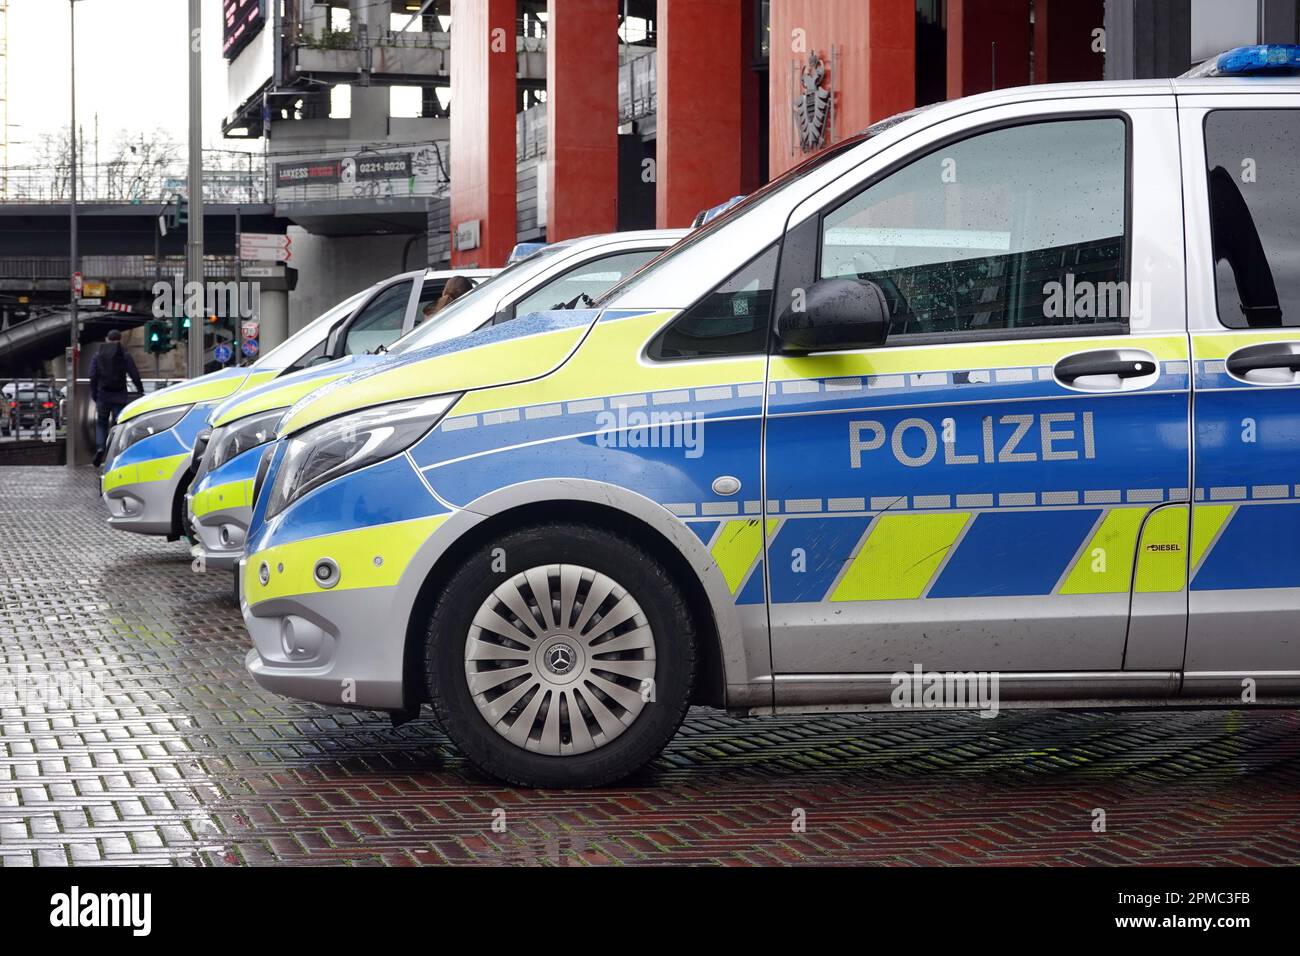 Polizei, Blaulicht, LED-Leuchten eines Polizeiautos Stockfotografie - Alamy